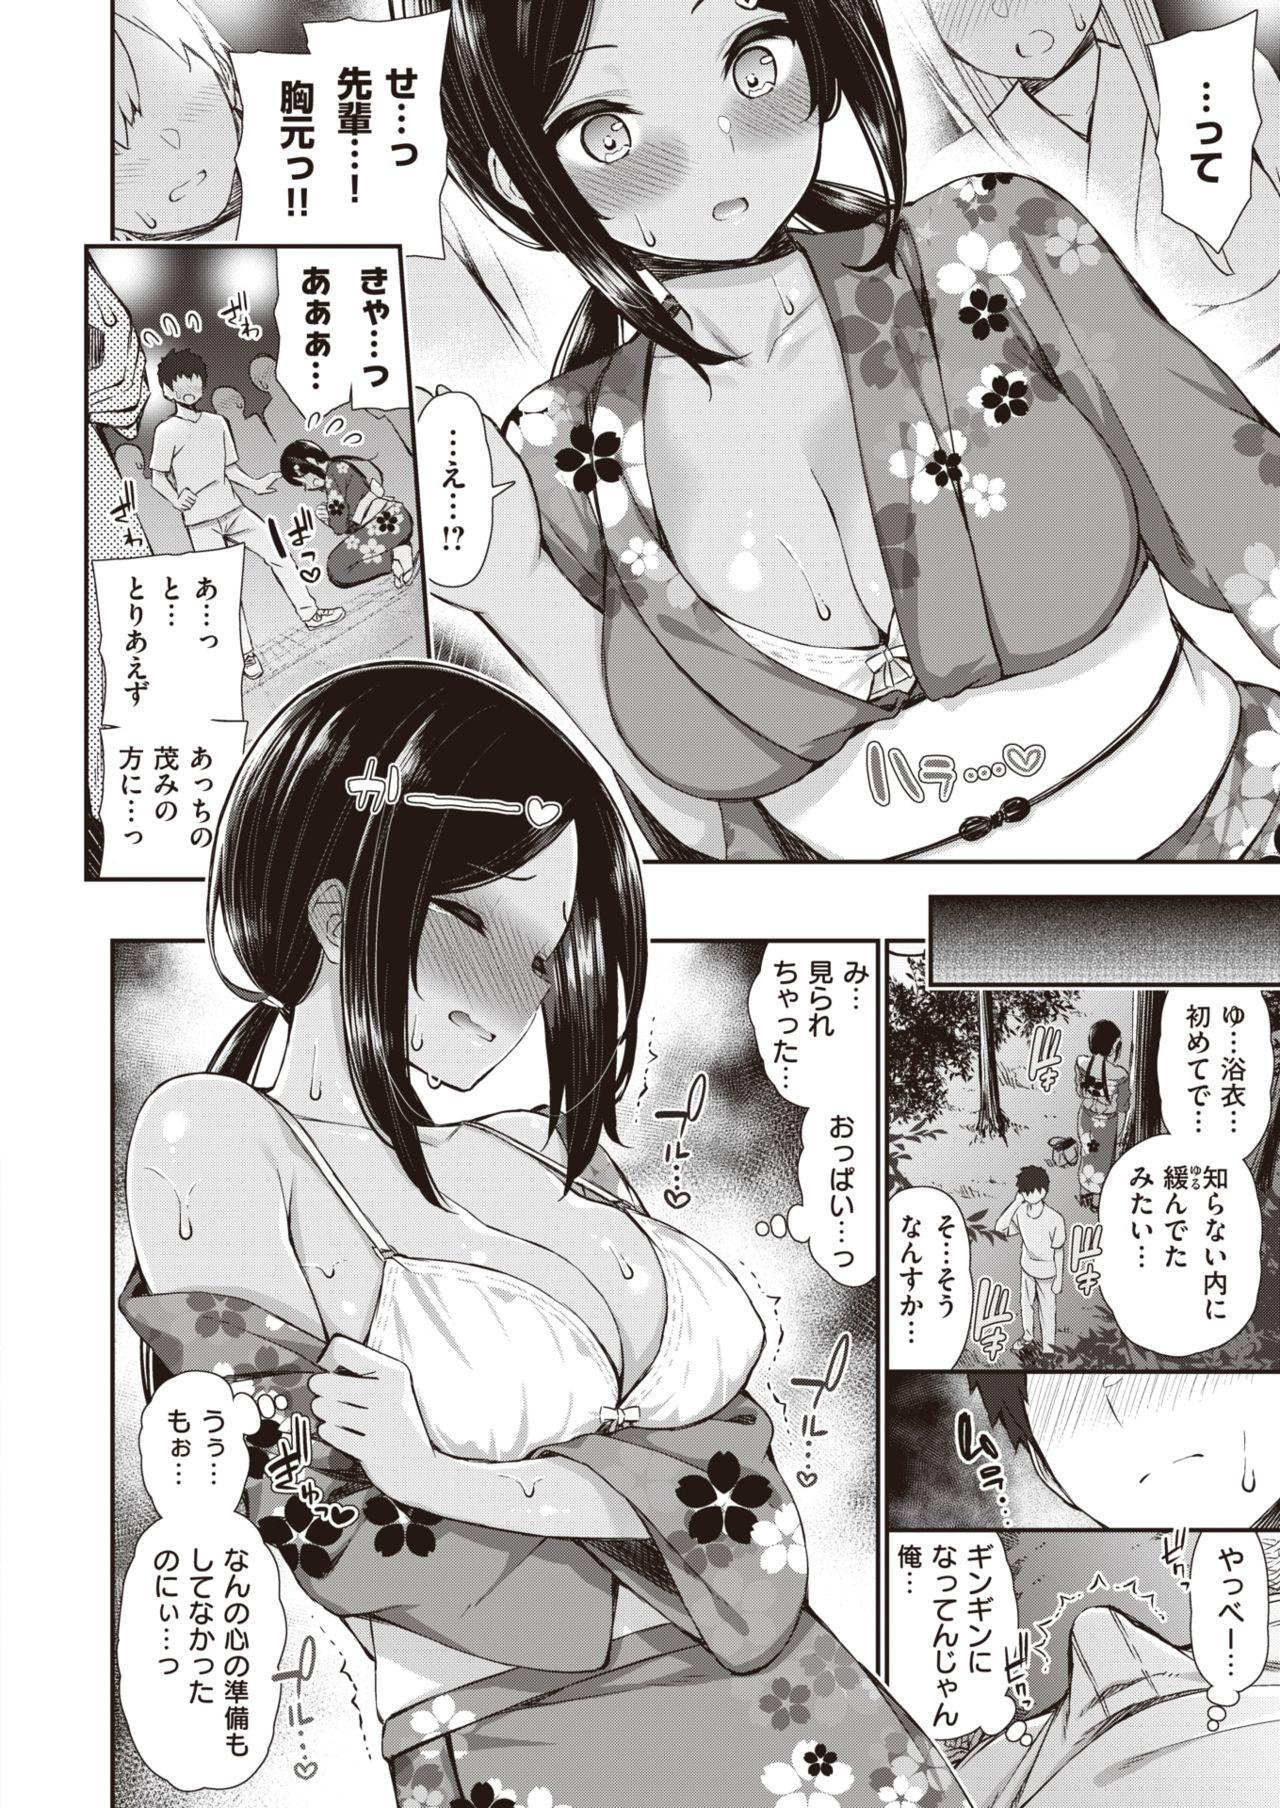 Bubblebutt NatsuAki Memory 1-4 Beautiful - Page 7